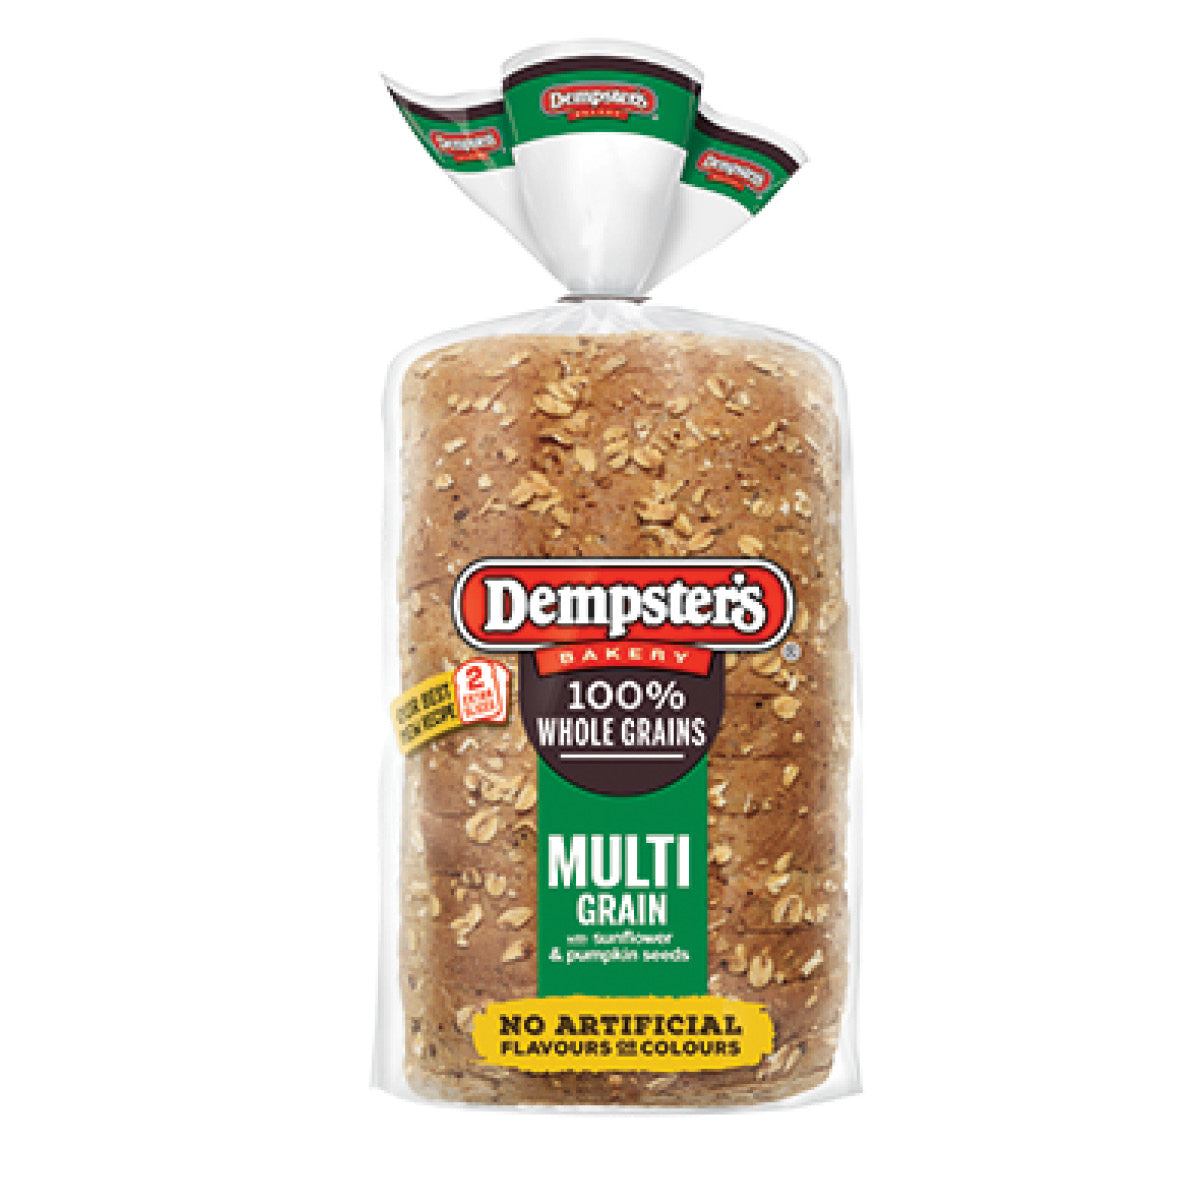 Dempster's Bread Whole Grain Multigrain, 600g